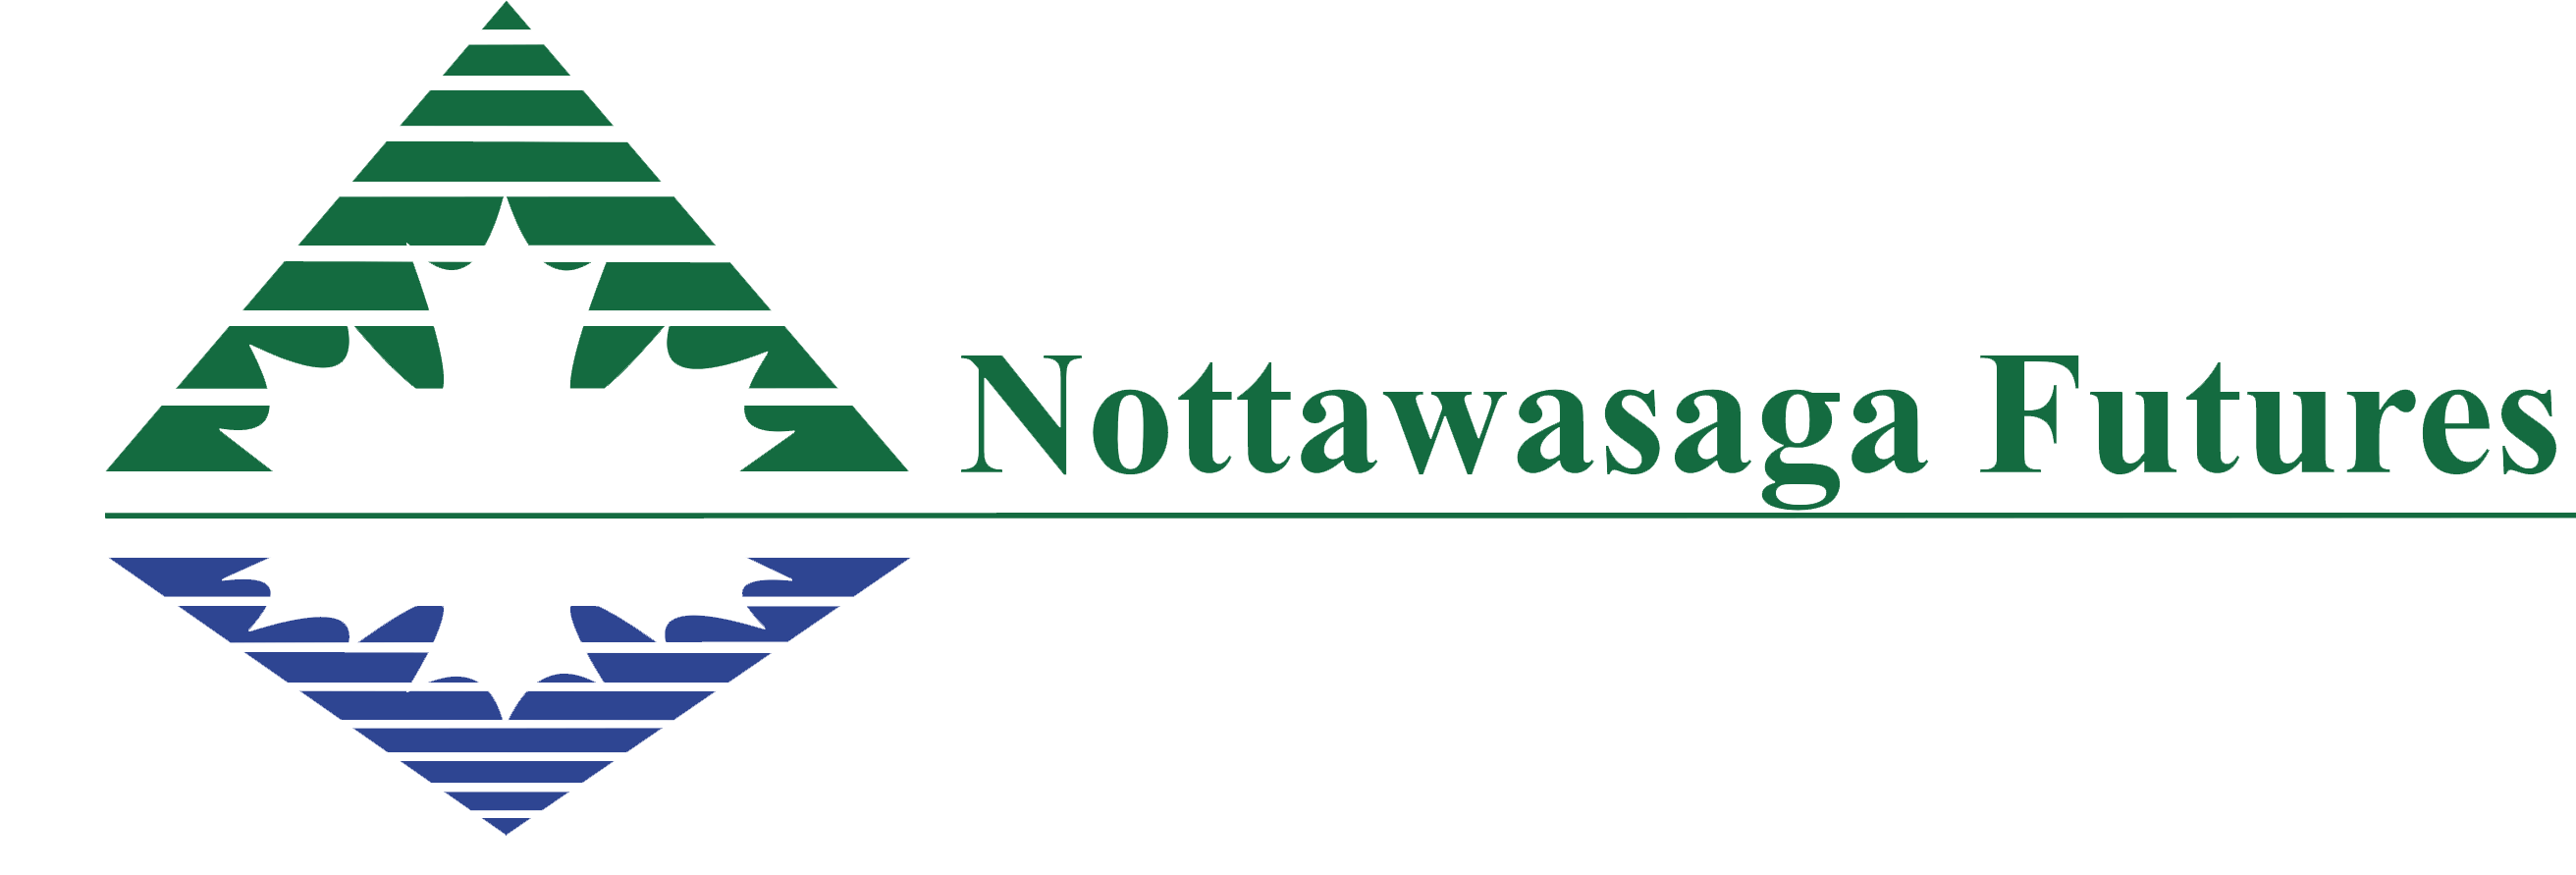 Nottawasga logo